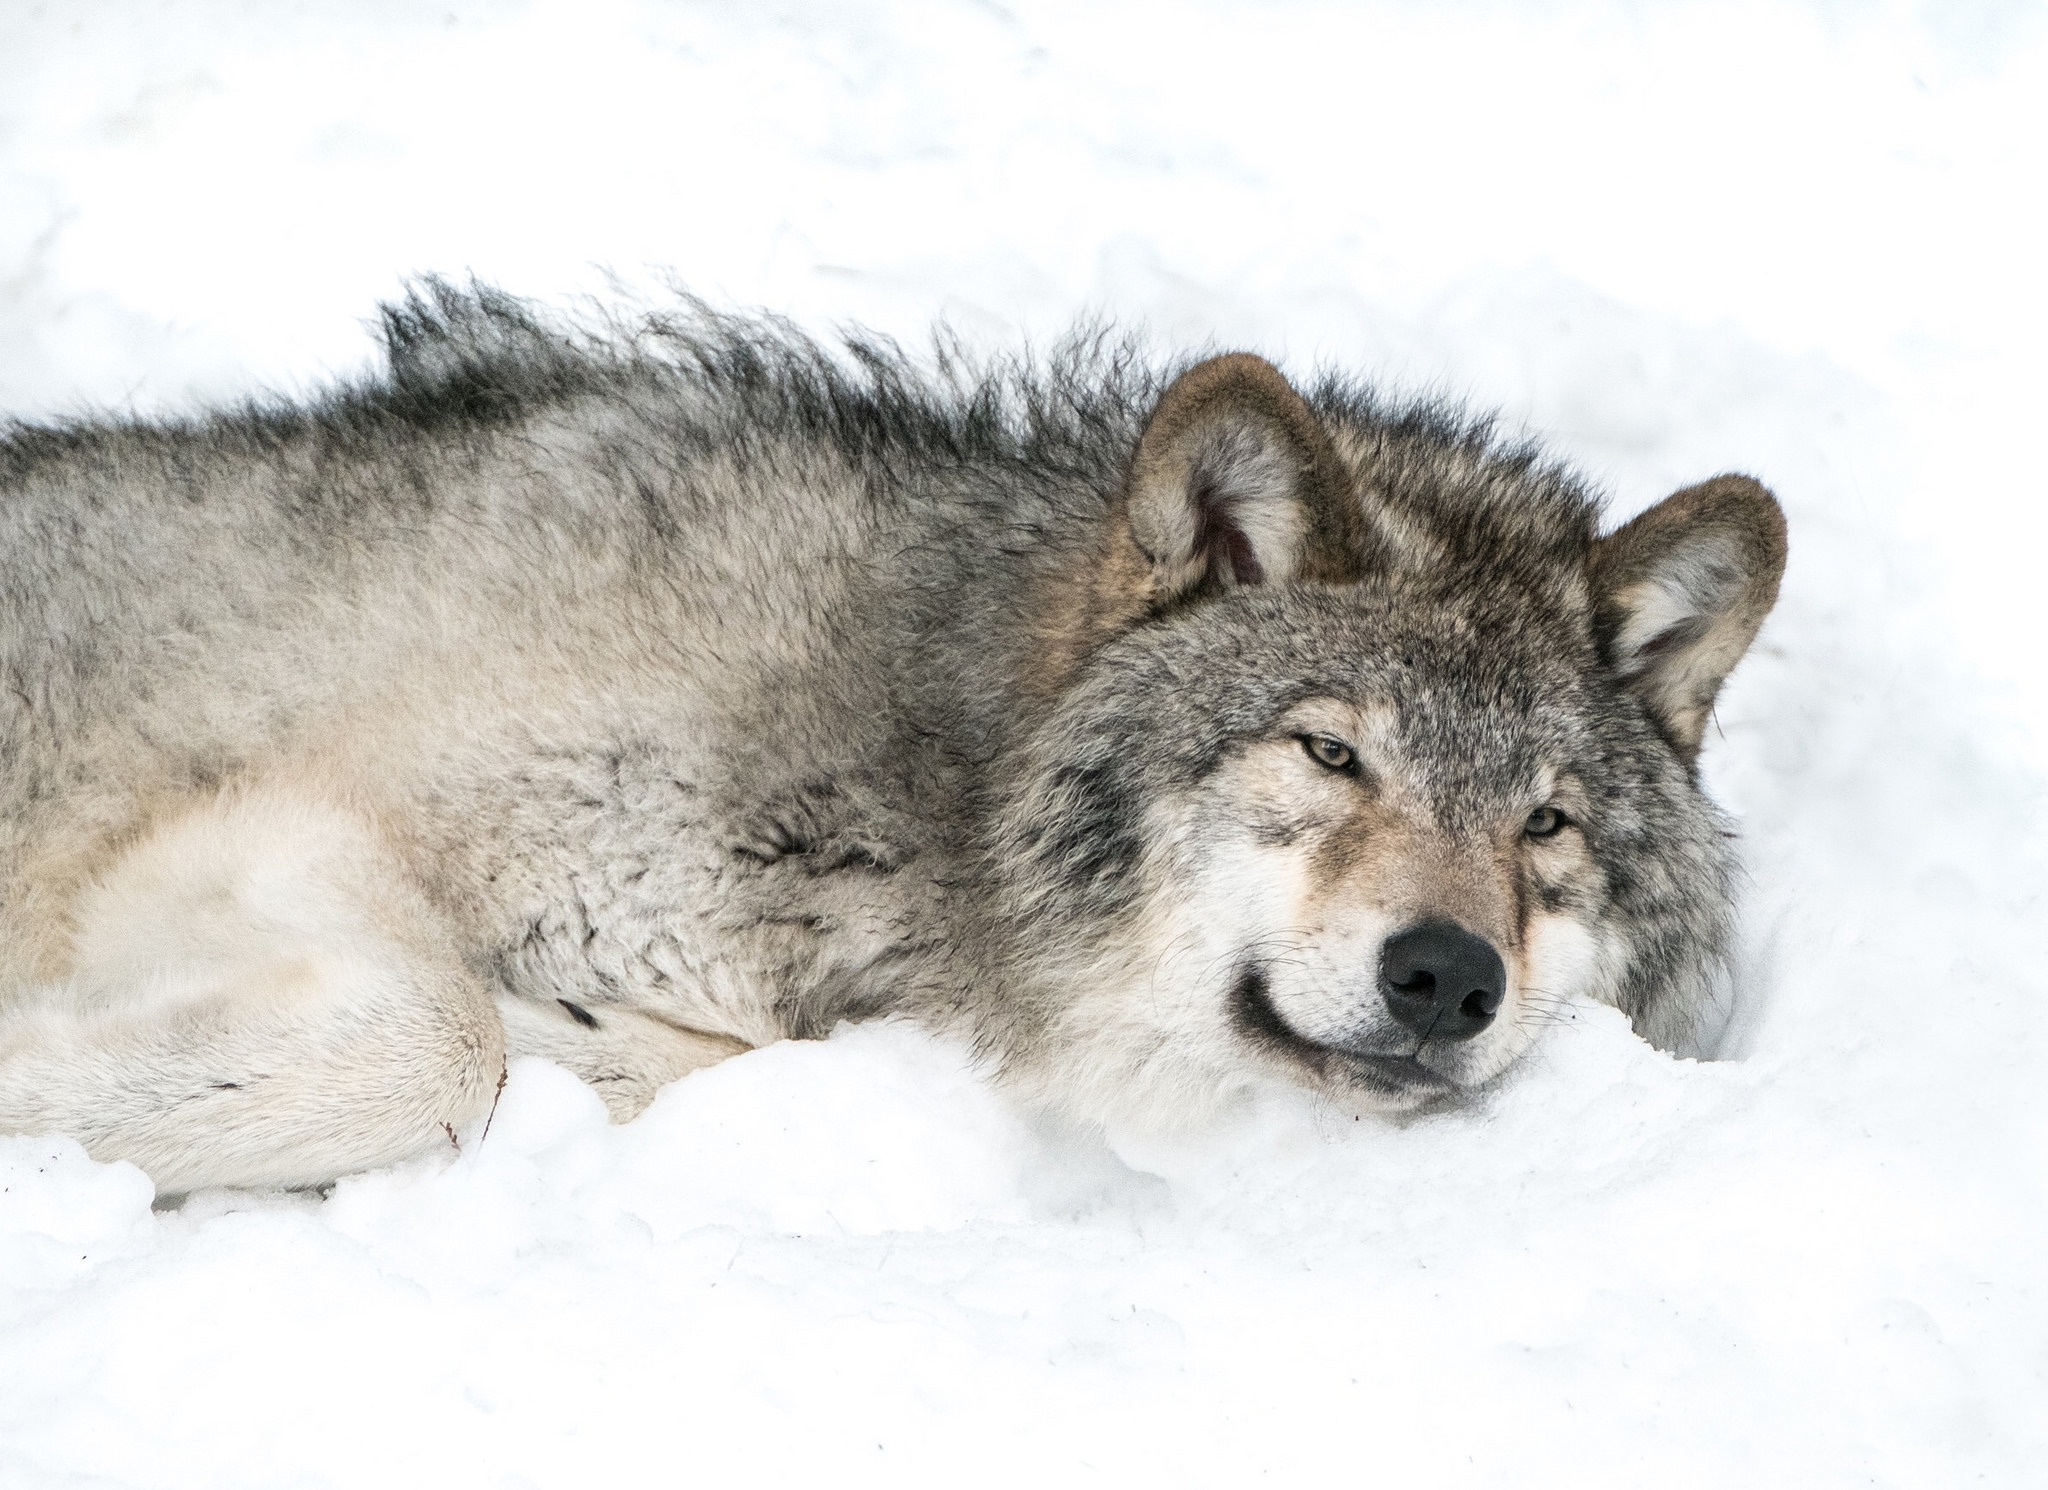 Скачать обои бесплатно Животные, Волки, Снег, Волк картинка на рабочий стол ПК